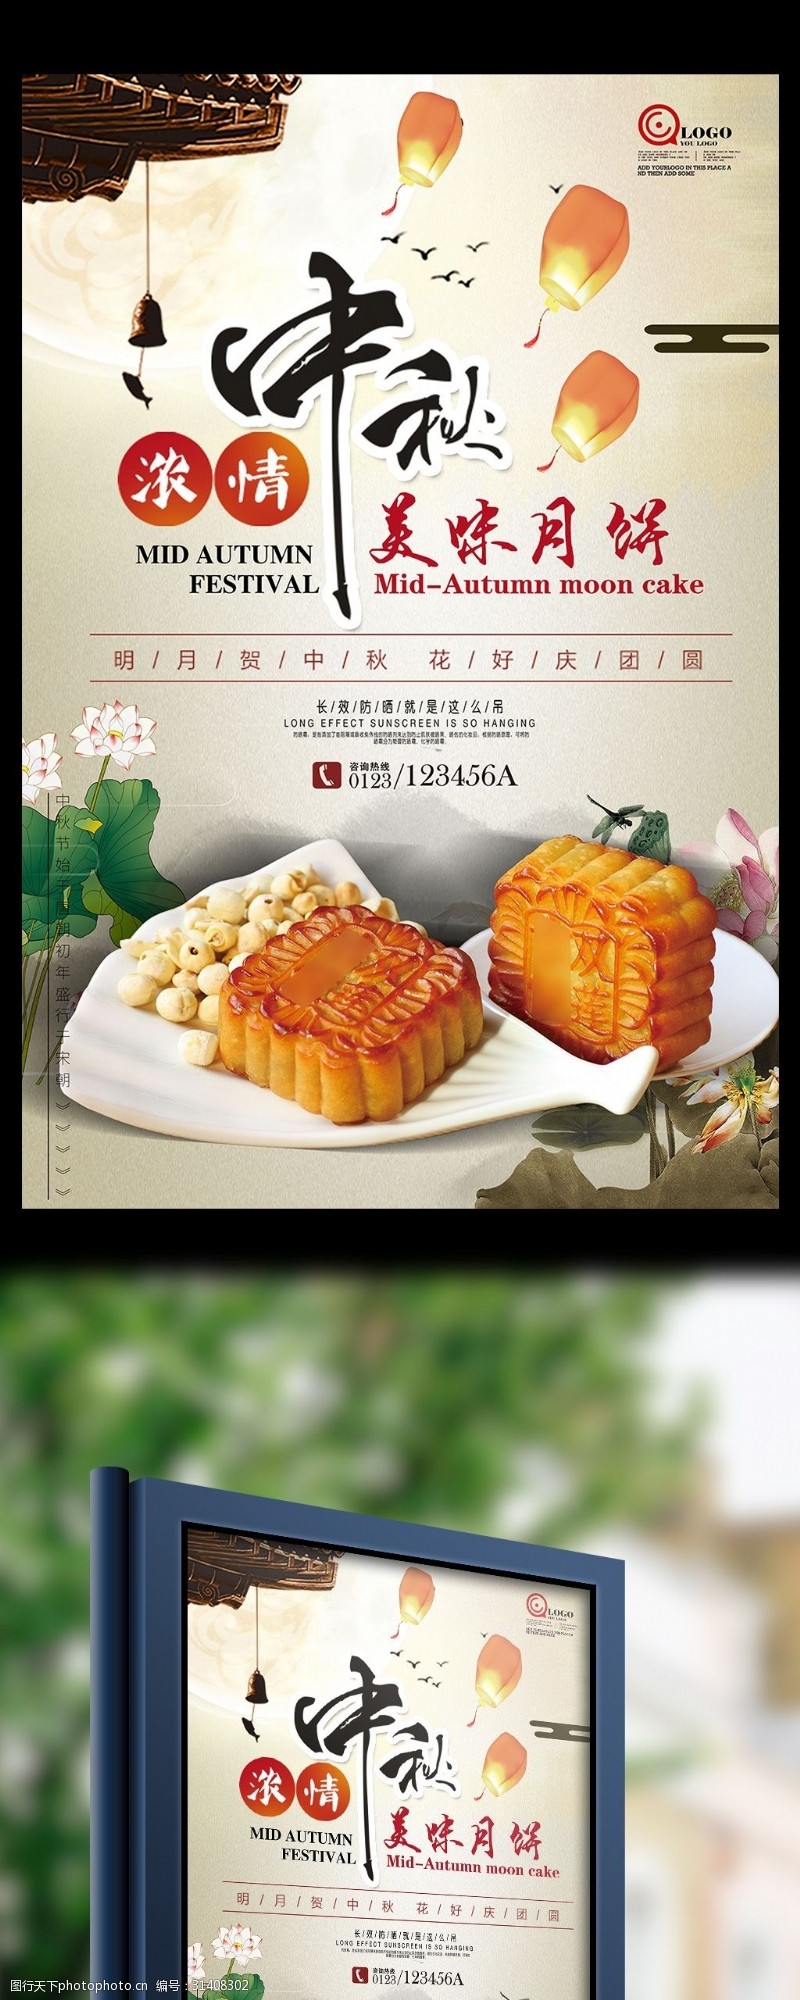 中秋节宣传古典水墨中国风传统美味中秋味道月饼宣传海报设计